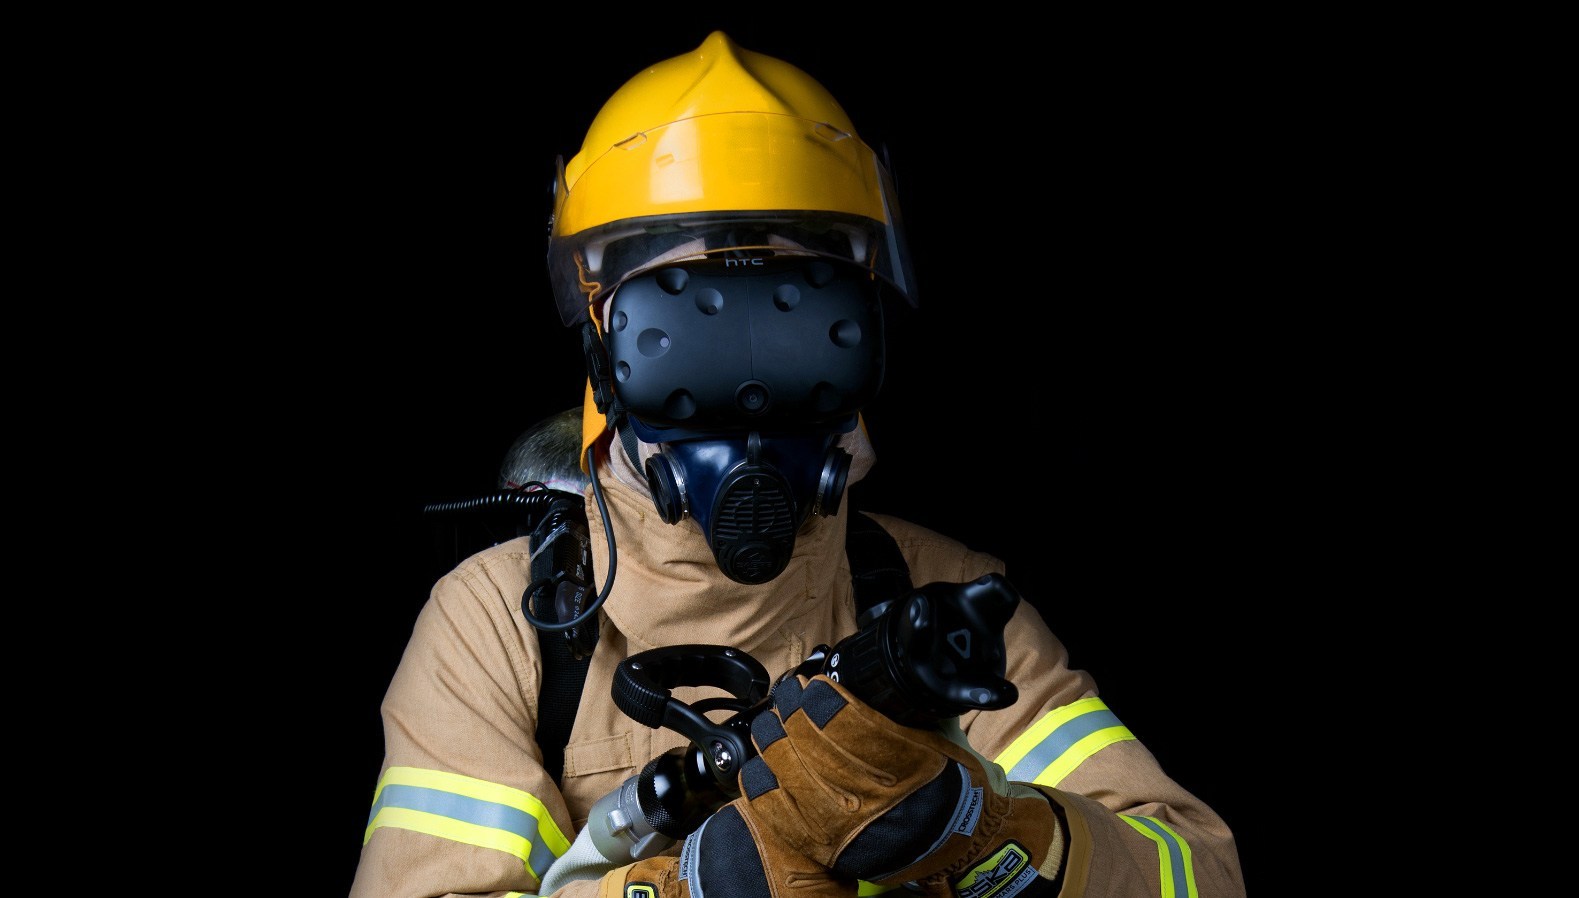 Lính cứu hỏa ở Úc sẽ được huấn luyện thông qua công nghệ thực tế ảo